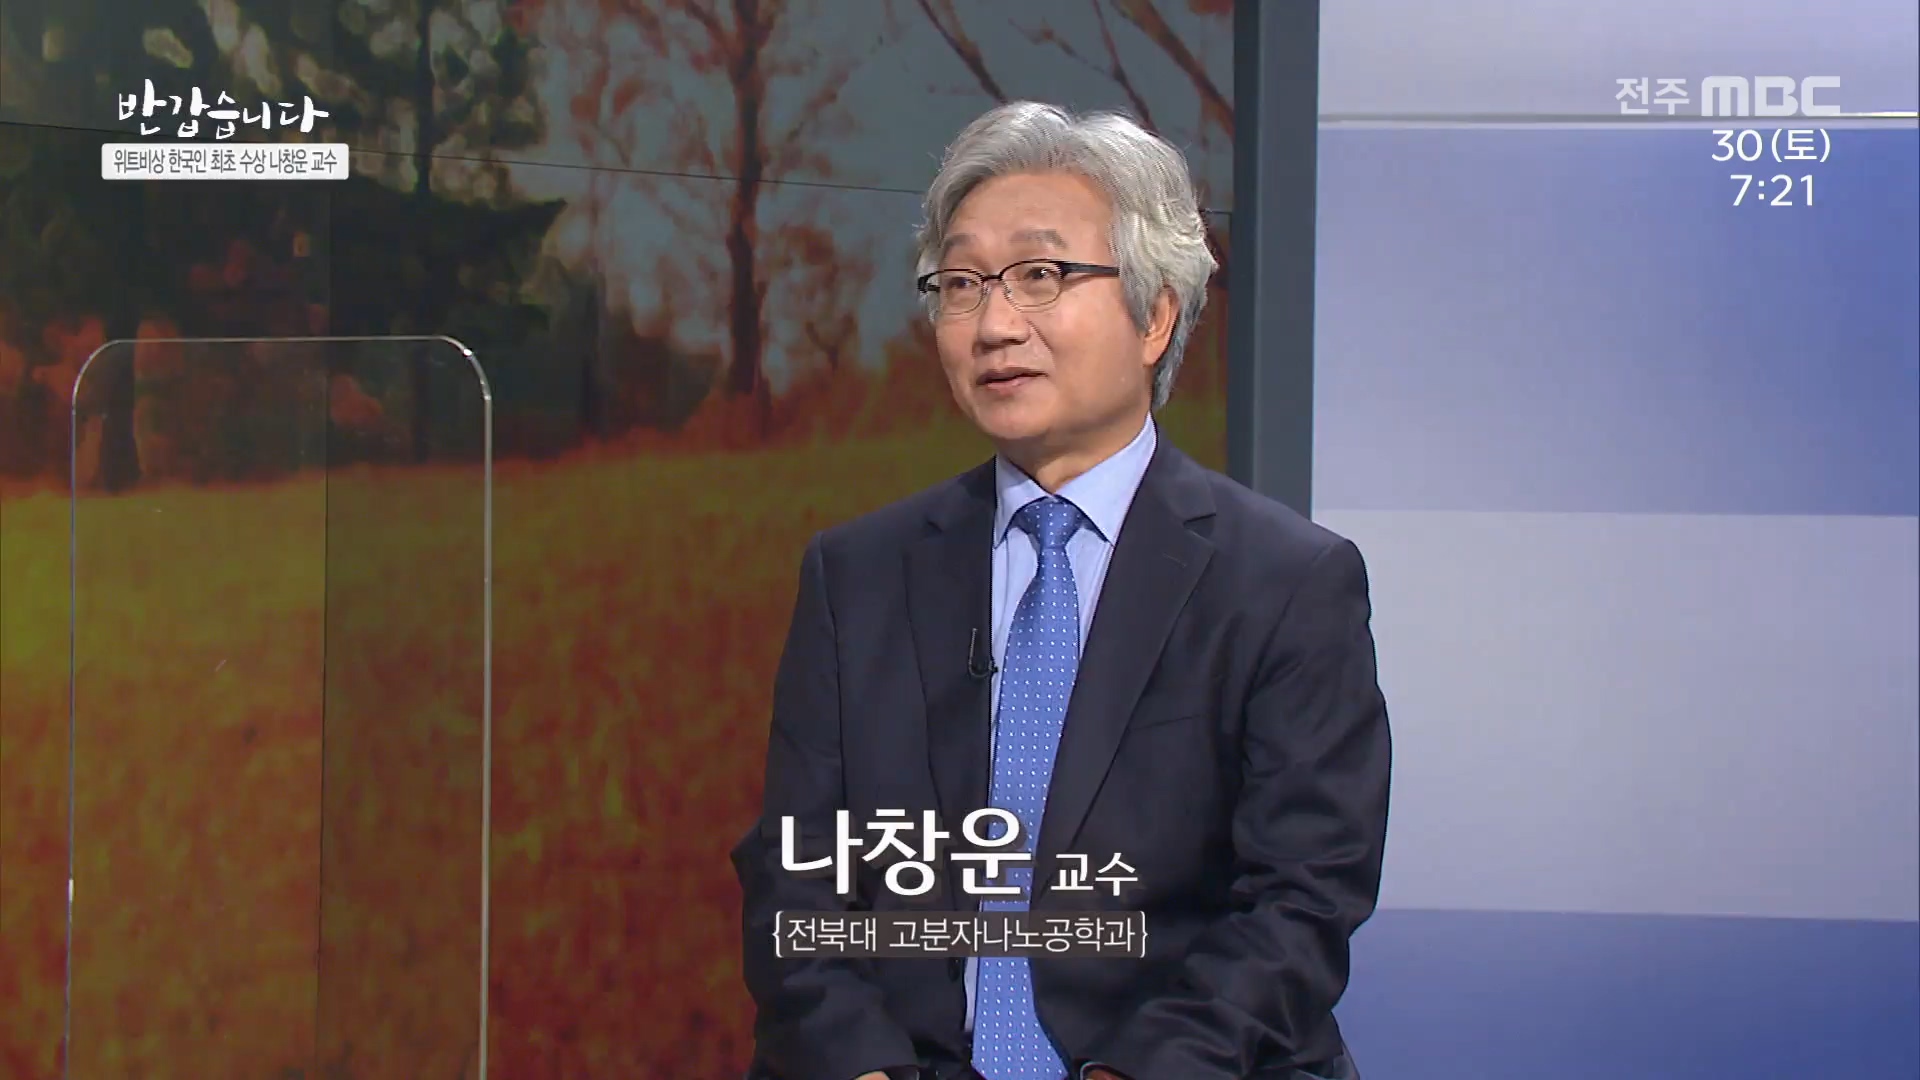 위트비상 한국인 최초 수상 나창운 교수